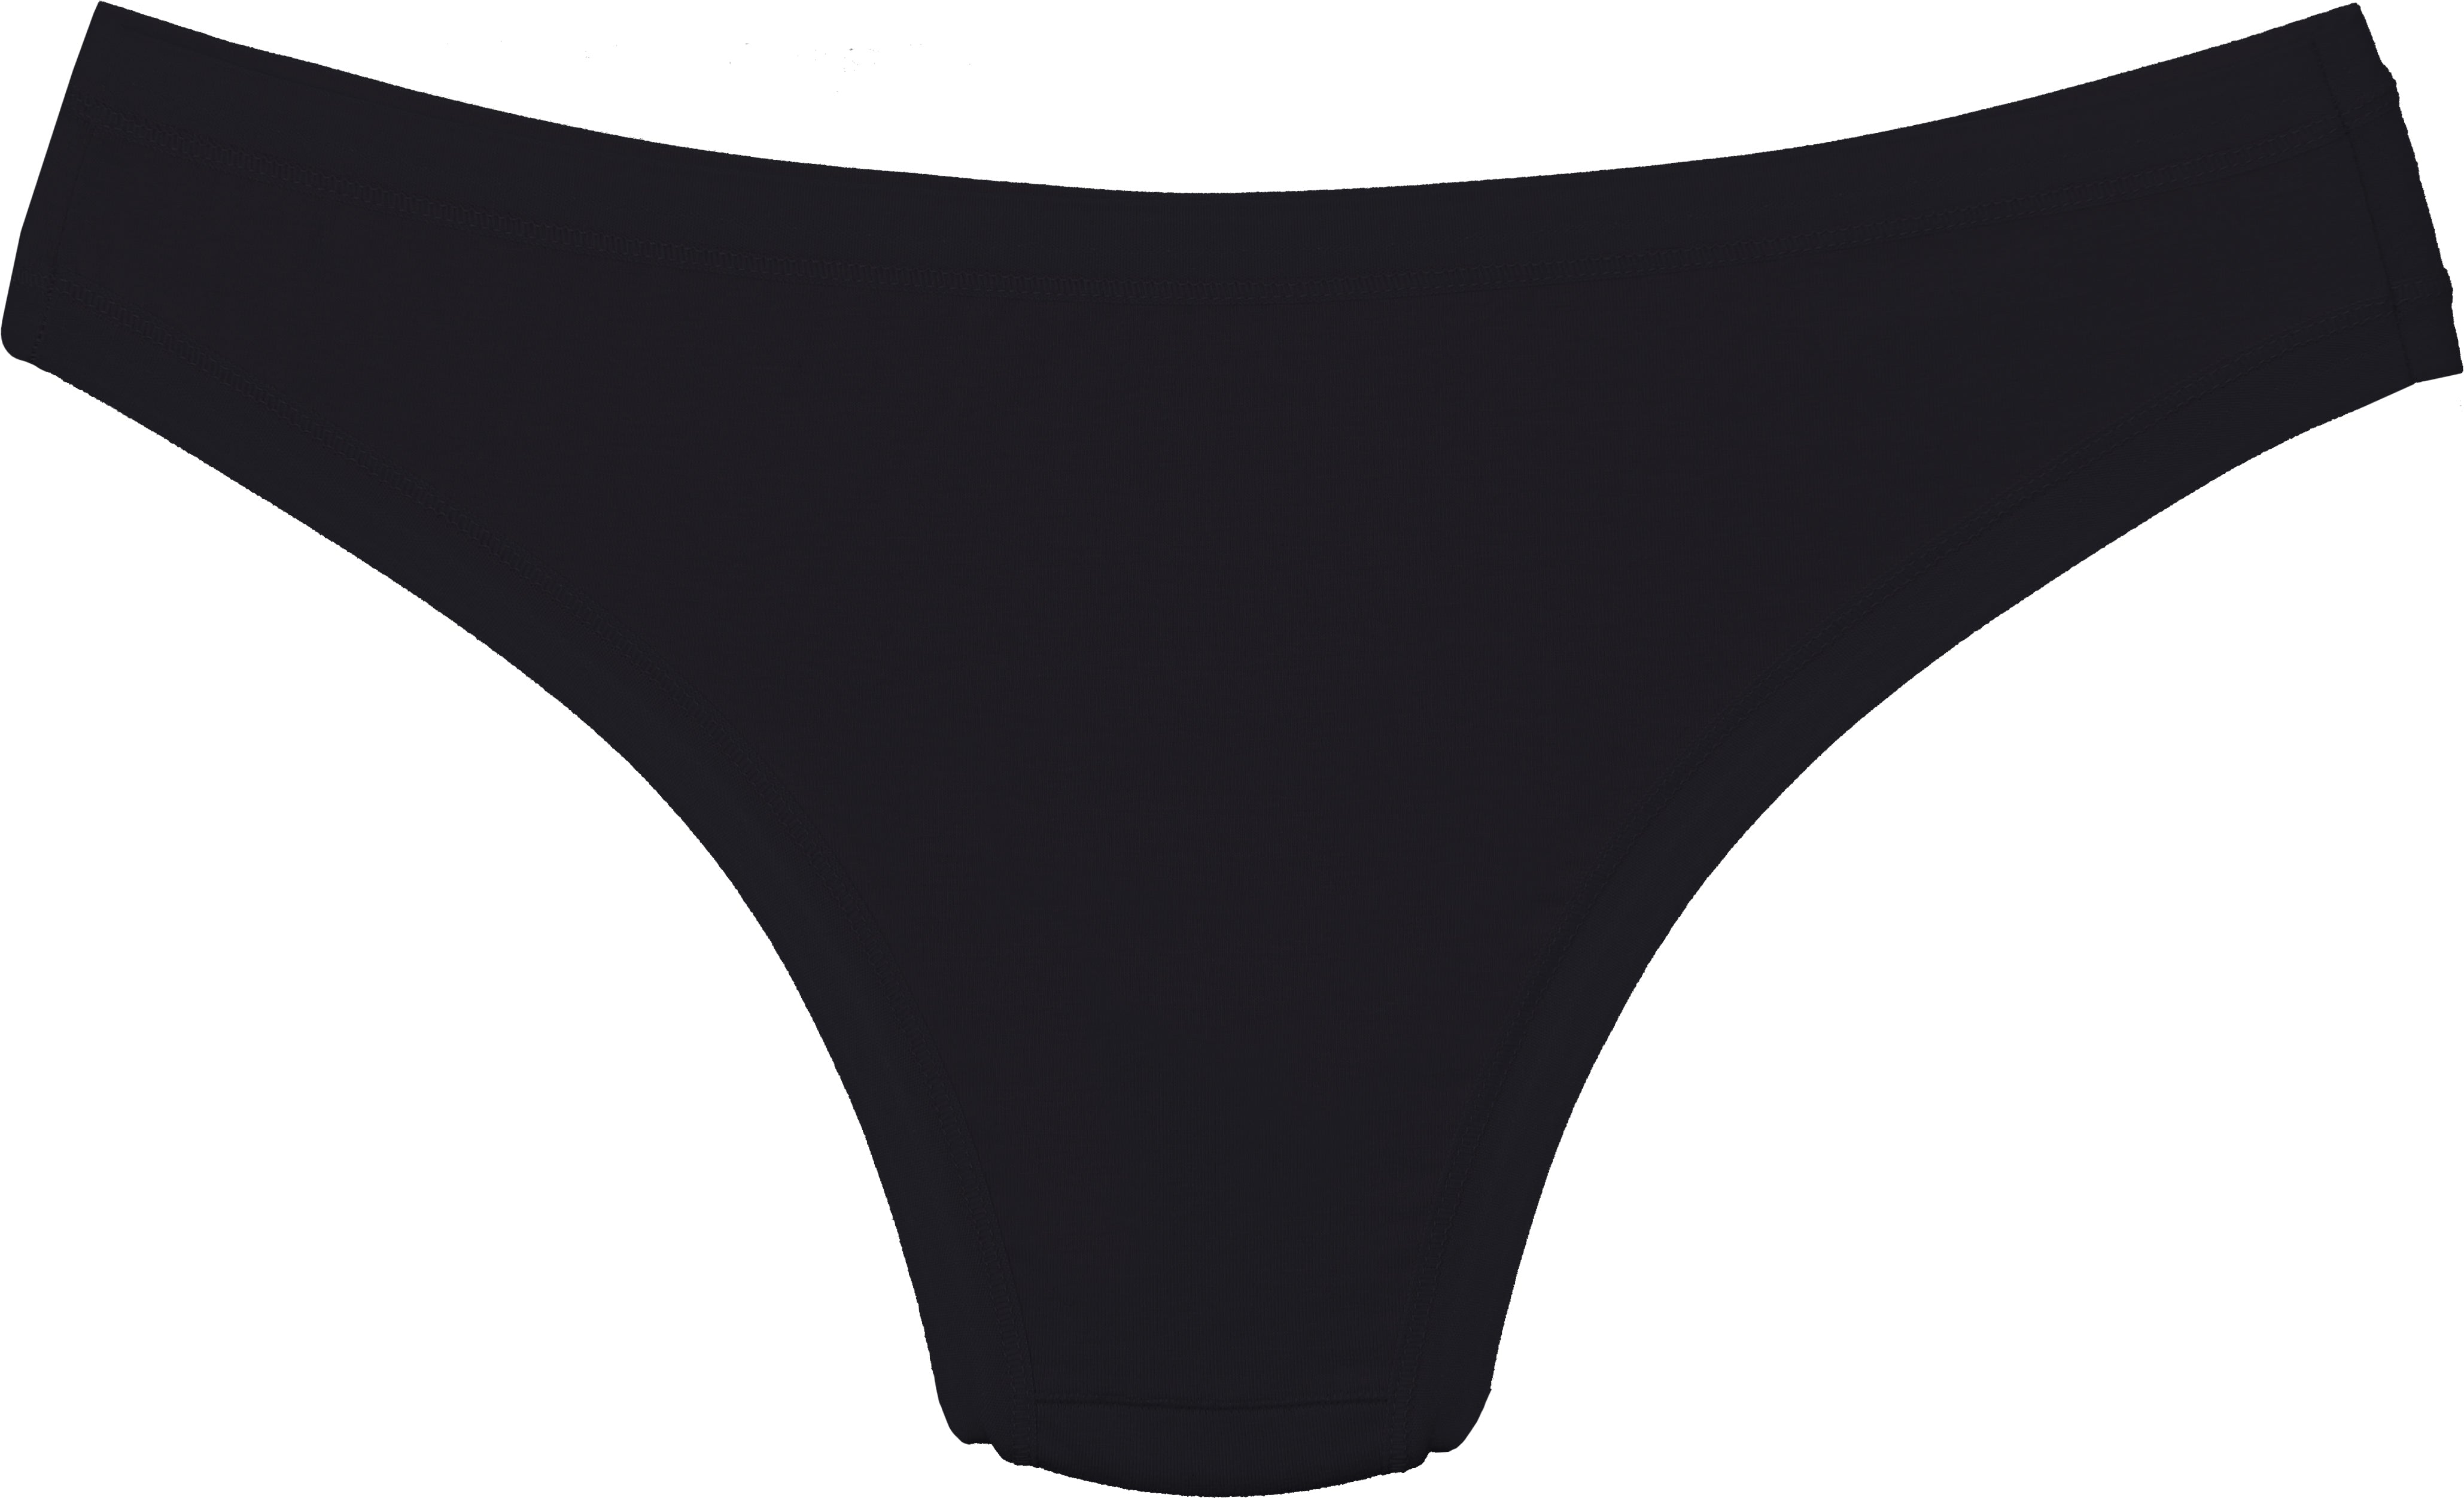 DULASI Striped Cotton Low Waist Cotton Bikini Panties Skin Friendly Bikini  Lingerie For Women From Bai03, $10.89